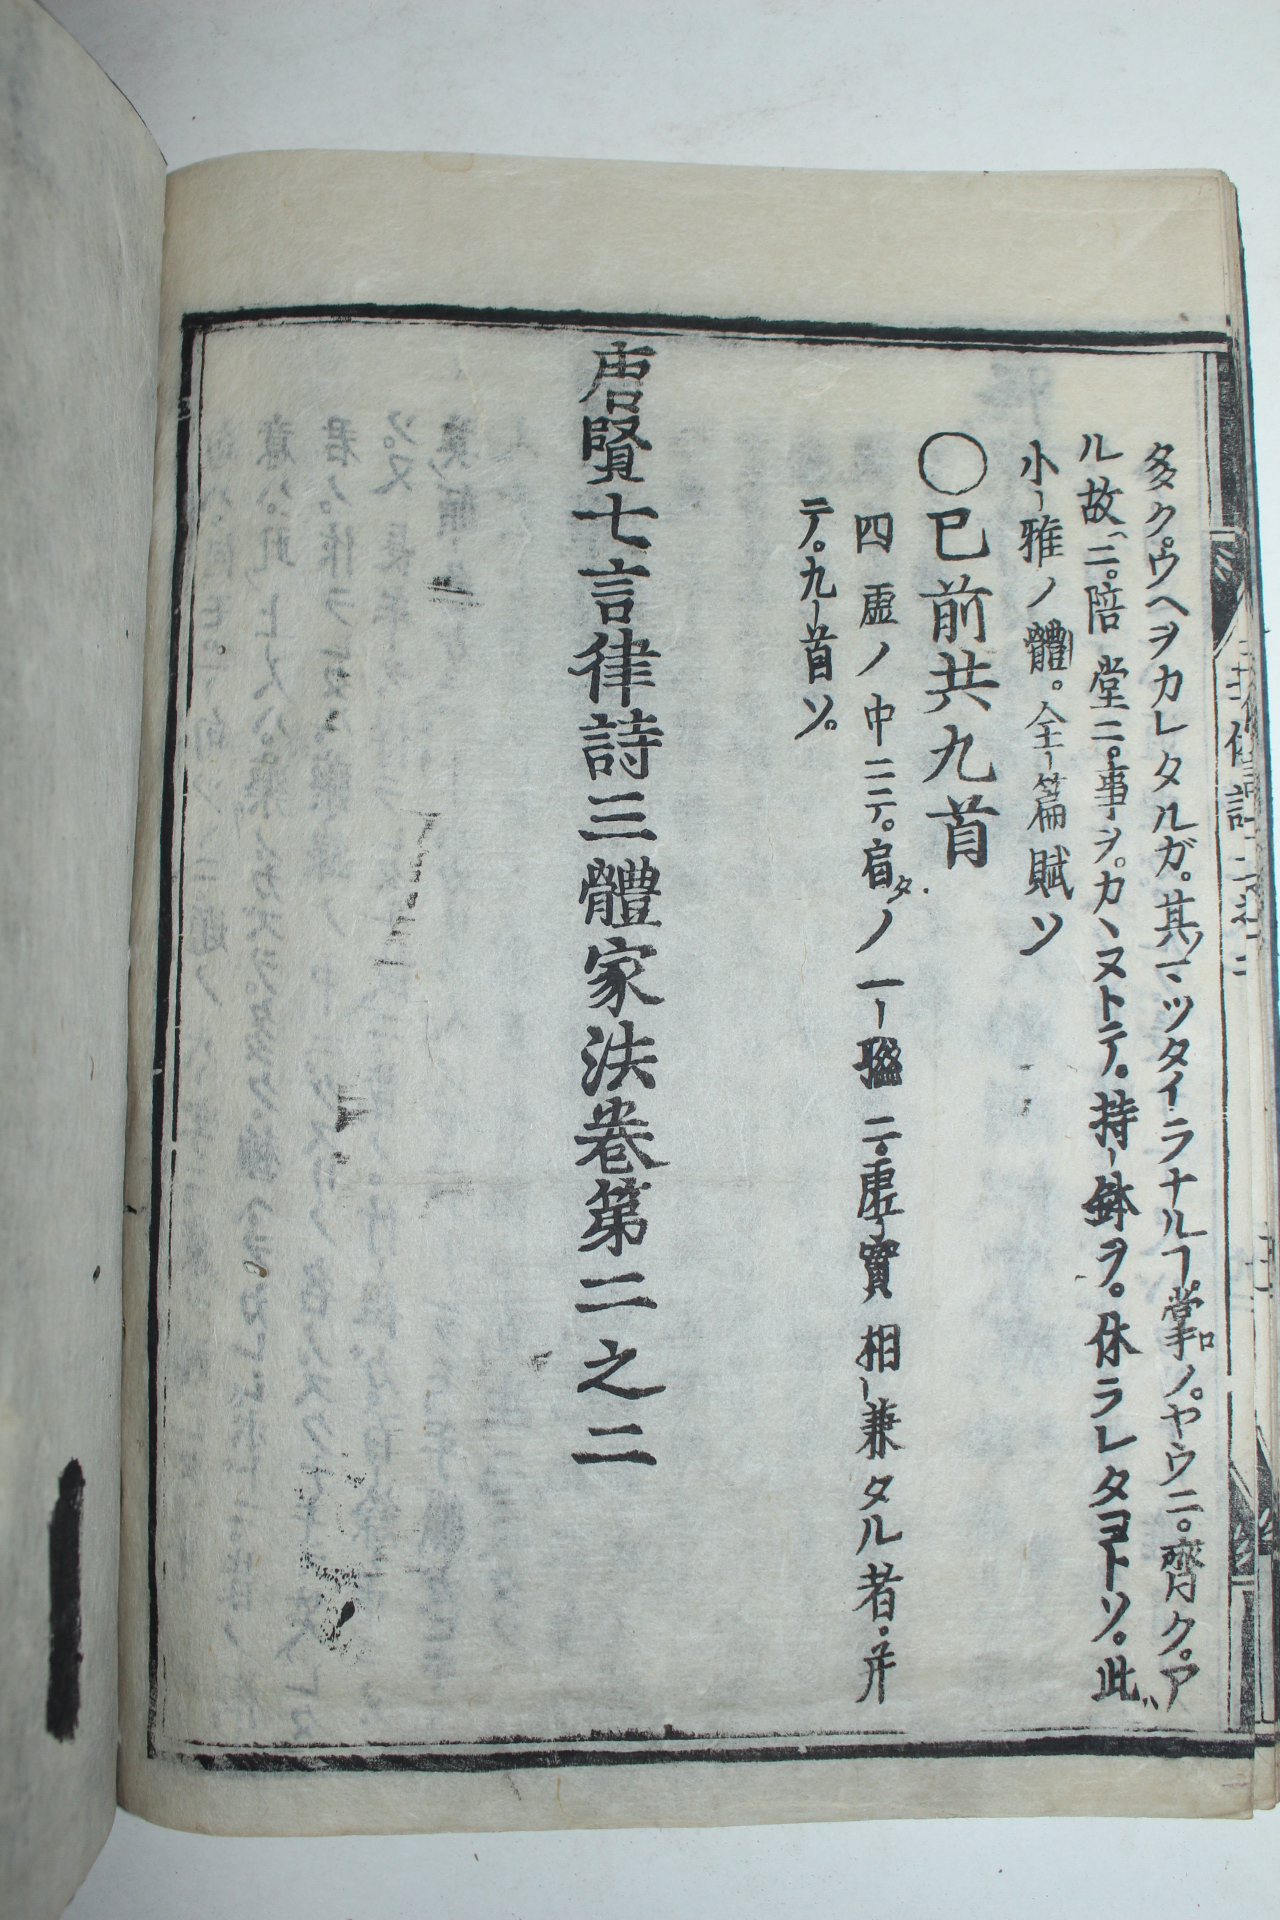 일본목판본 당현칠언율시삼체가법(唐賢七言律詩三體家法)권2